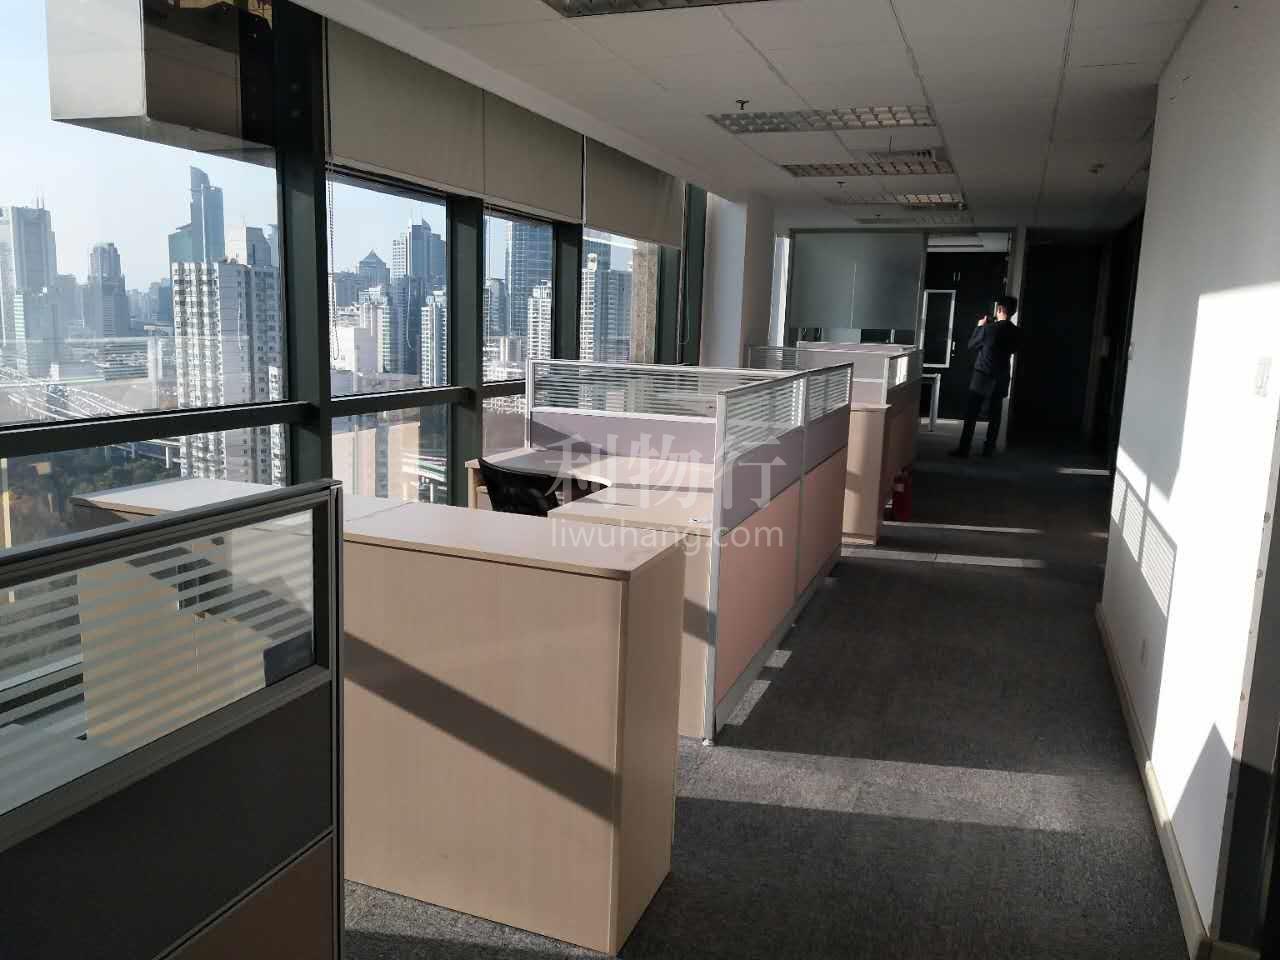 博银国际大厦写字楼283m2办公室8.50元/m2/天 精装修